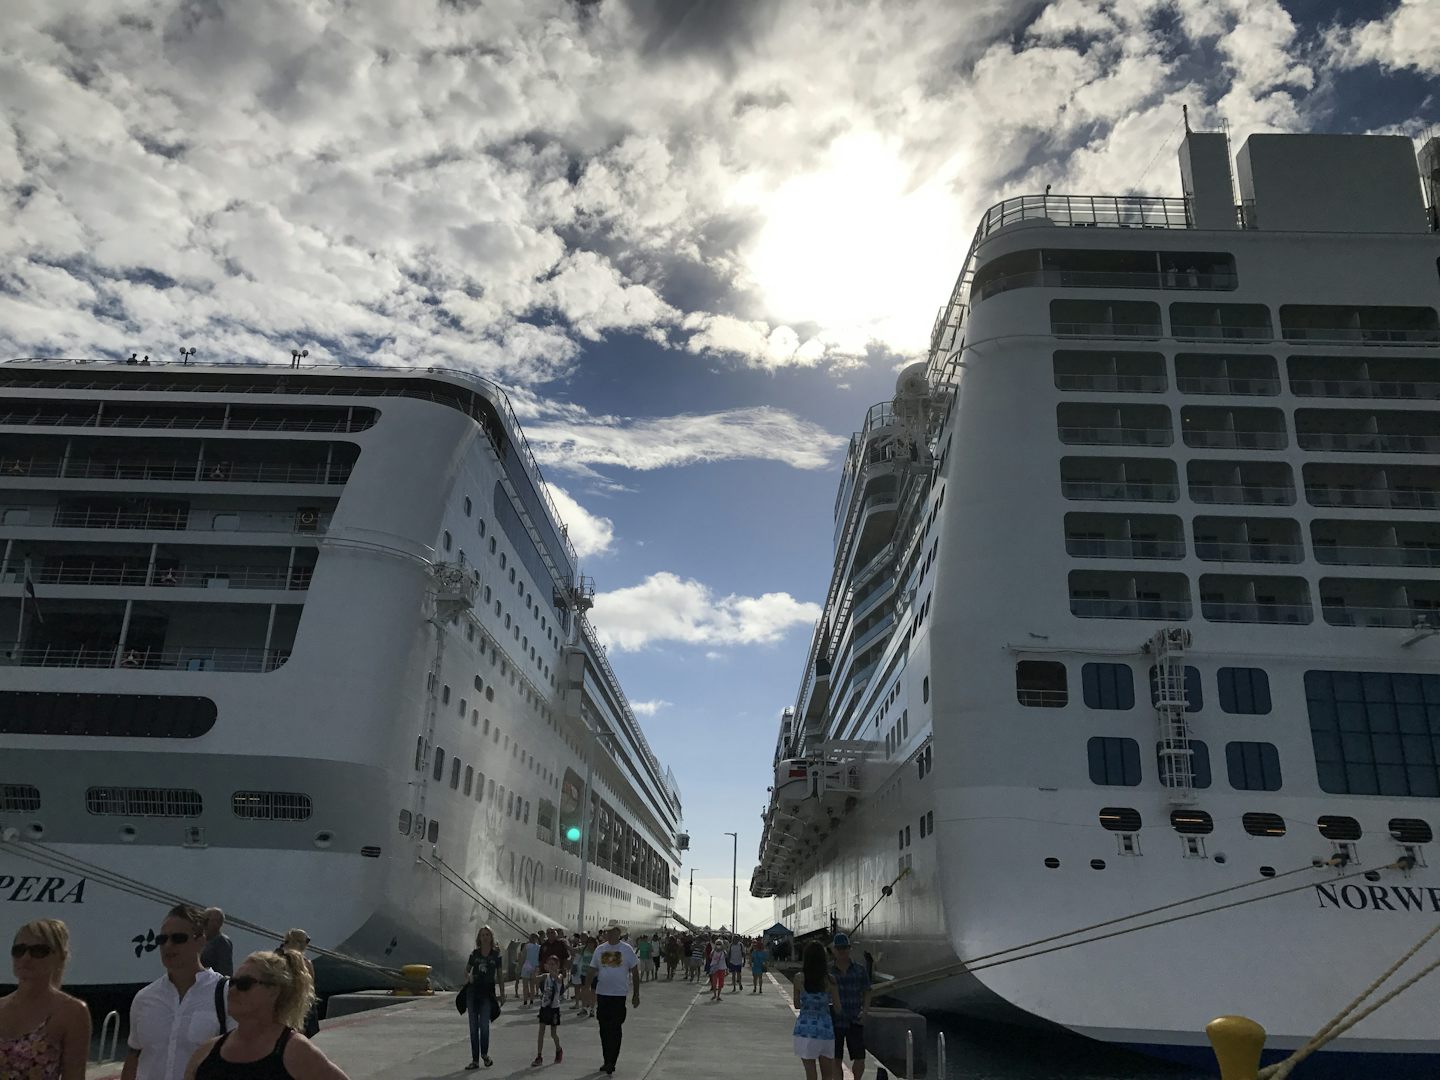 Tortola next to a MSC cruise ship